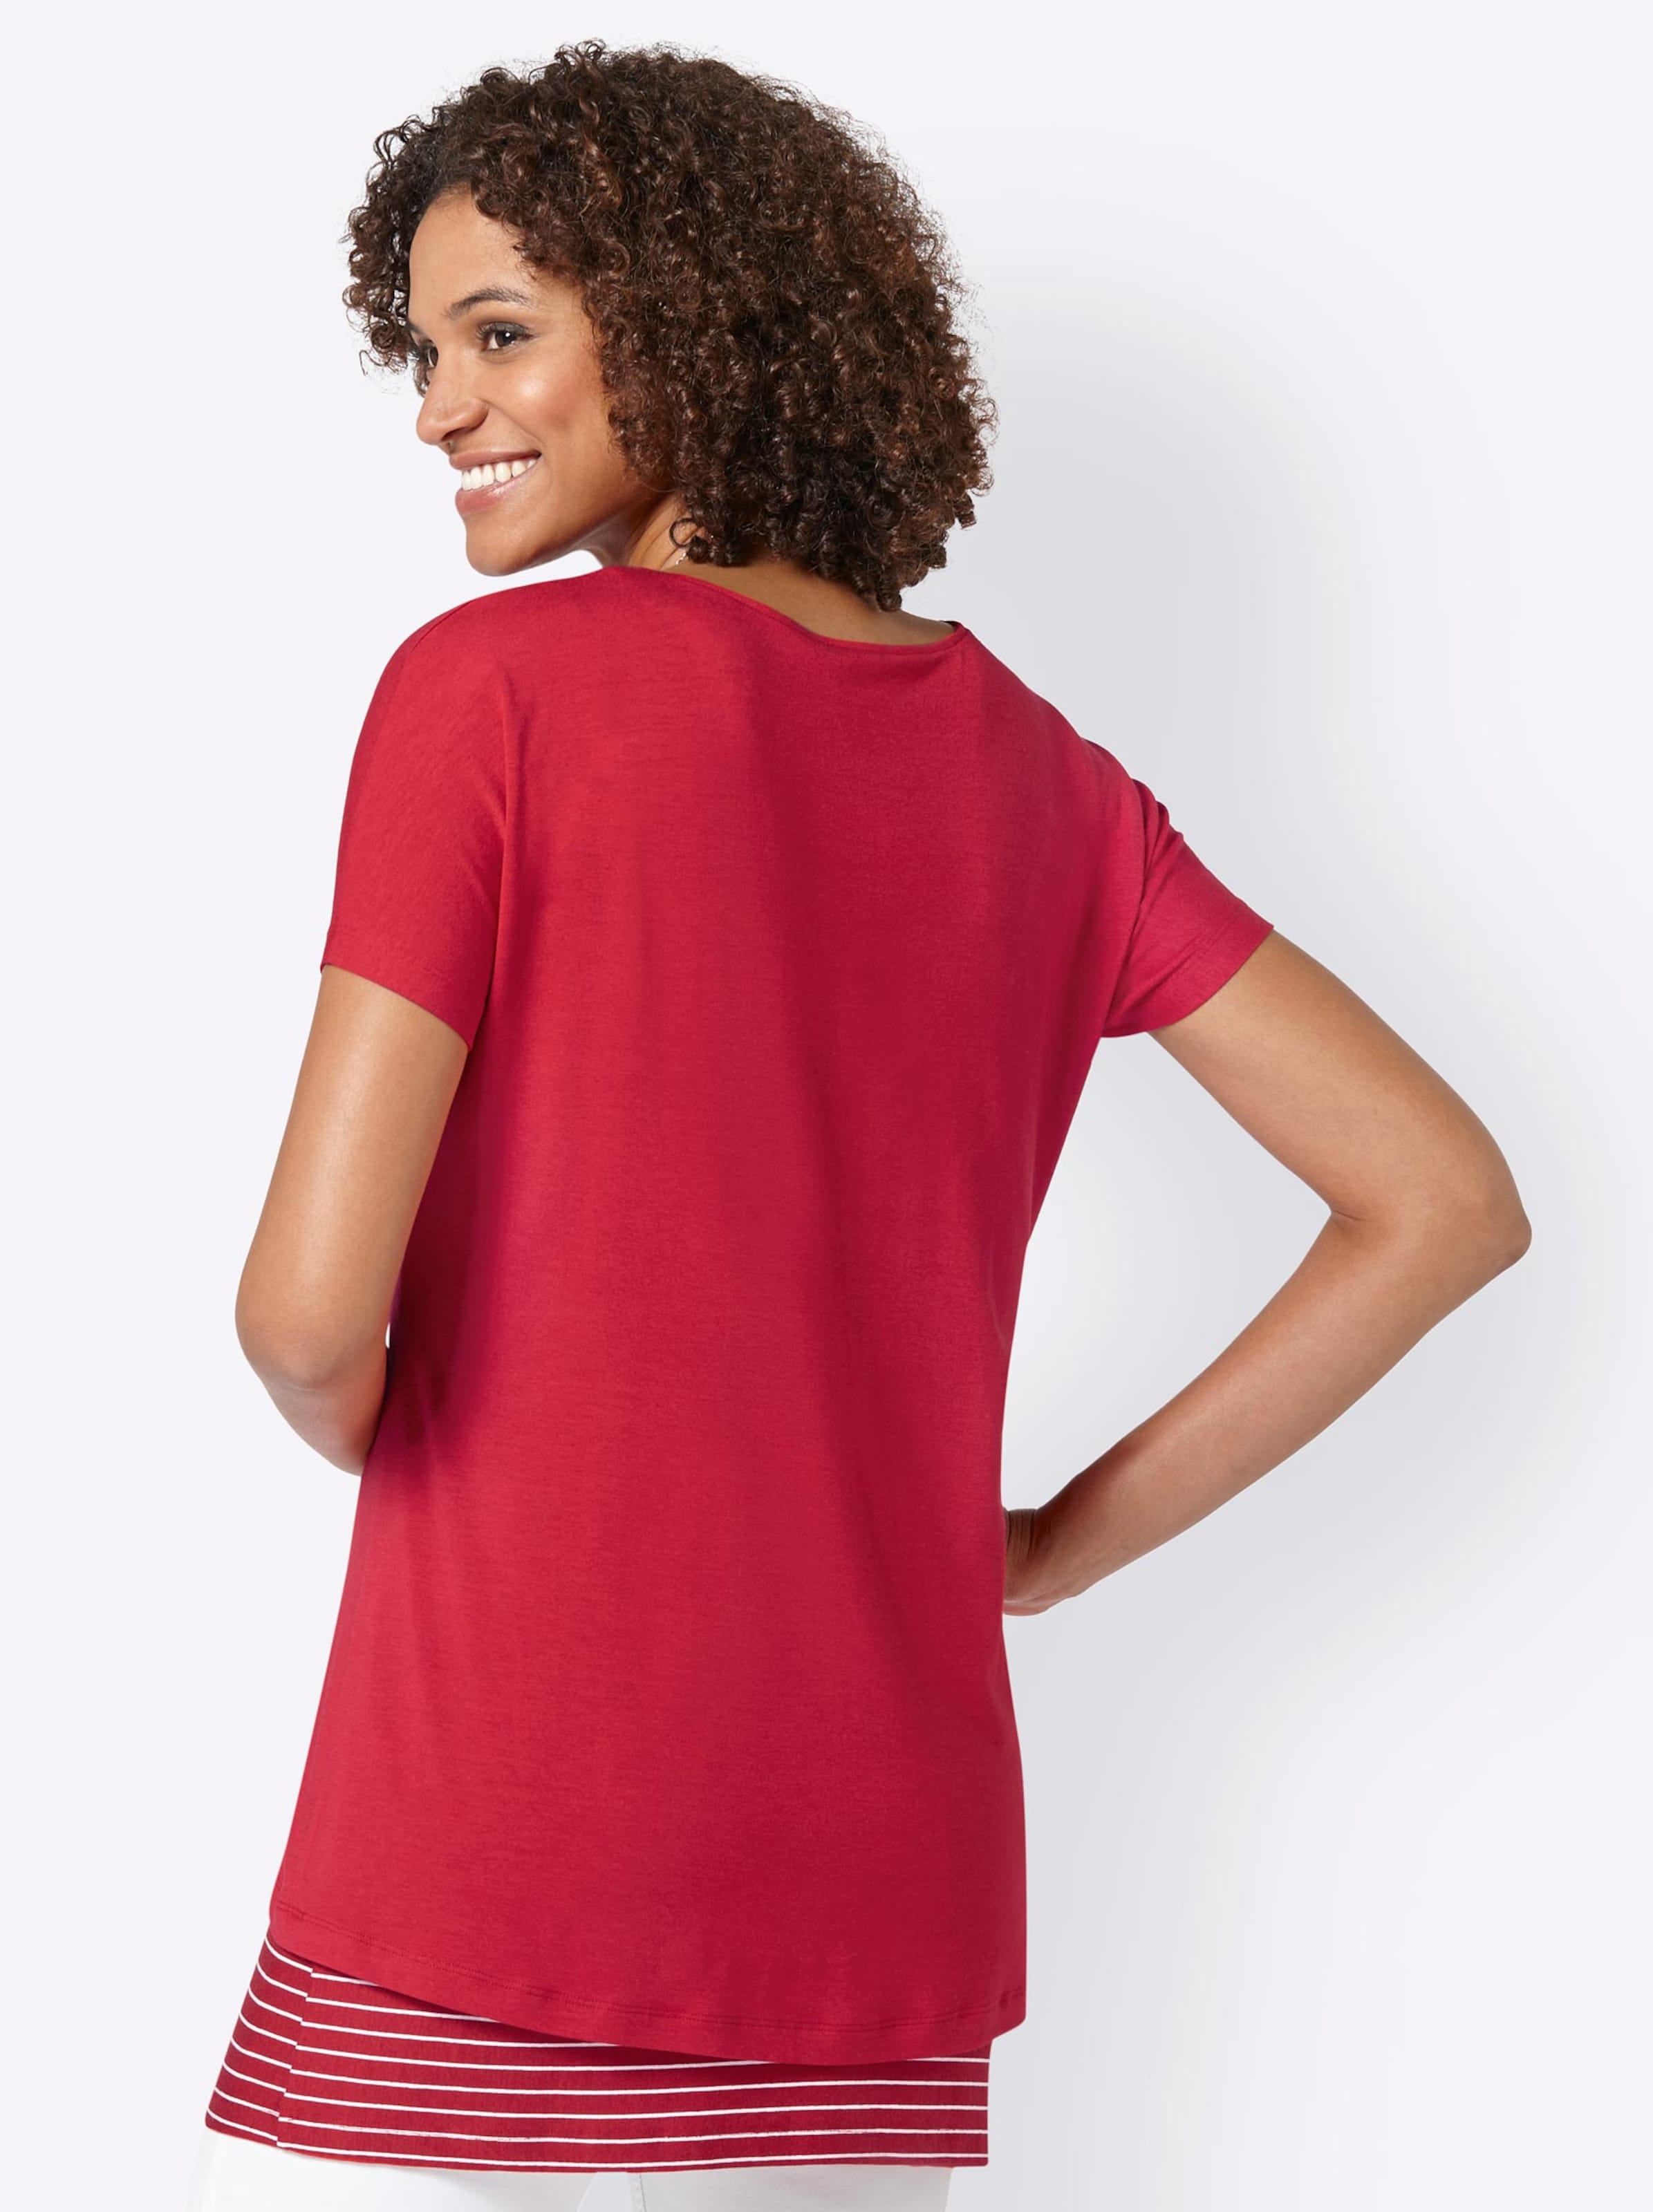 Damenmode Shirts 2-in-1-Shirt in rot 